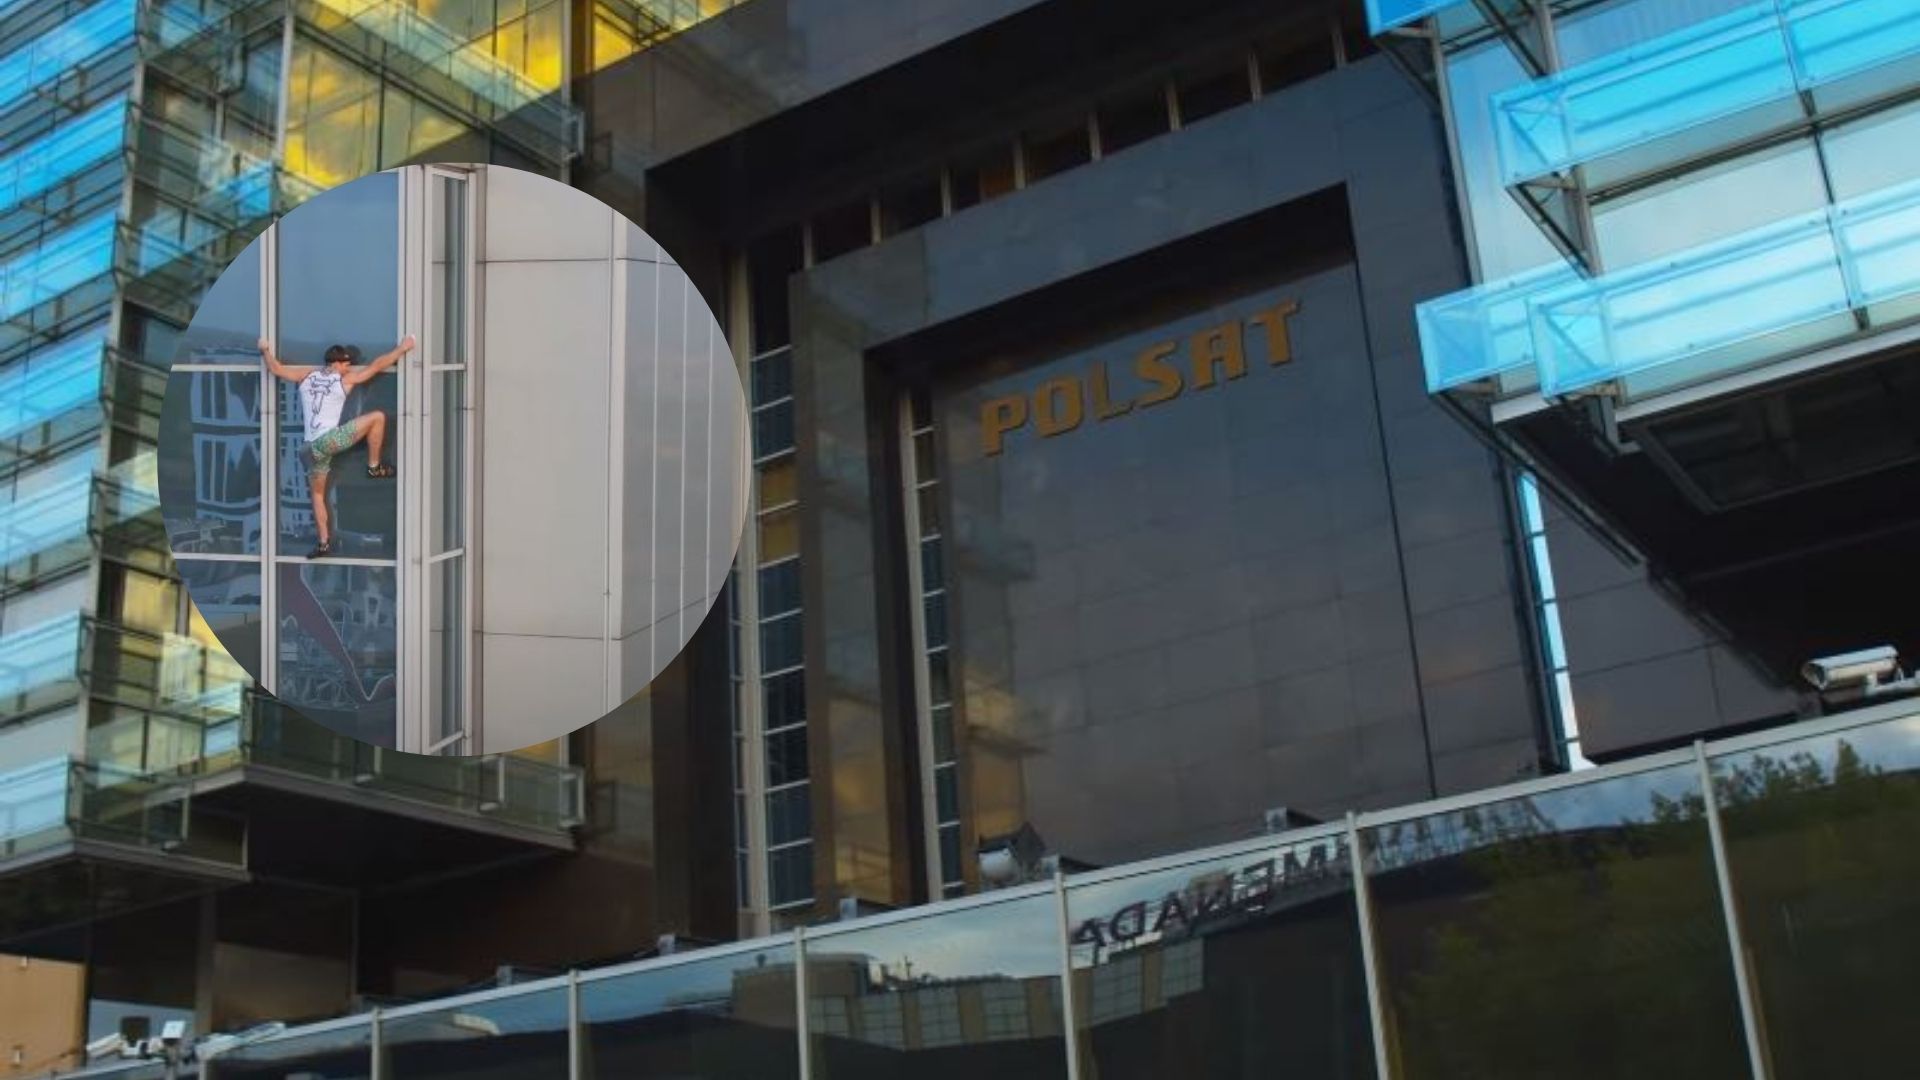 Mężczyzna wspiął się na budynek Polsatu